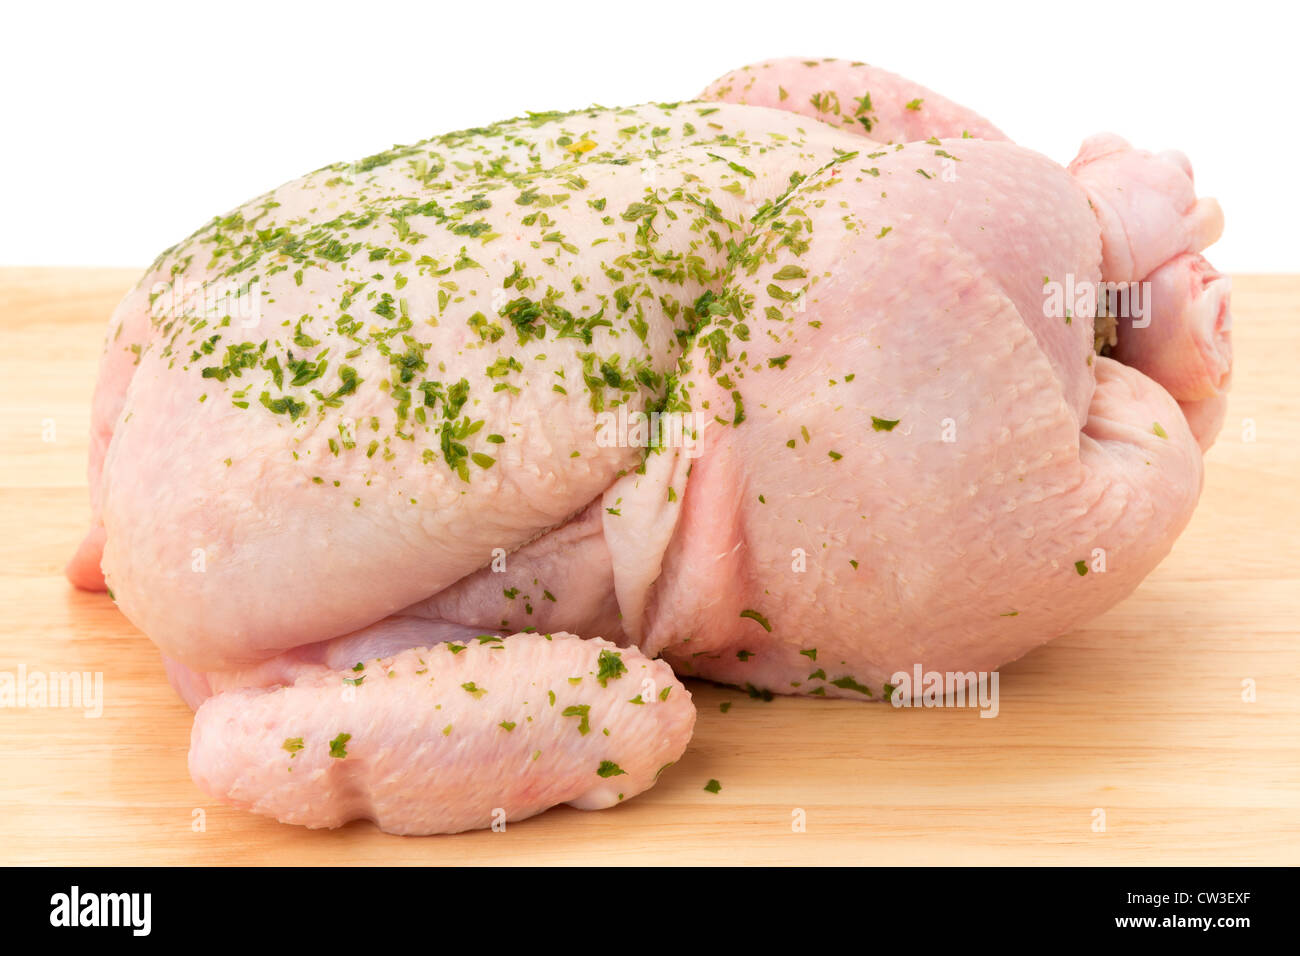 Eine frische ungekochte Huhn auf ein Holzbrett - Studio gedreht Stockfoto